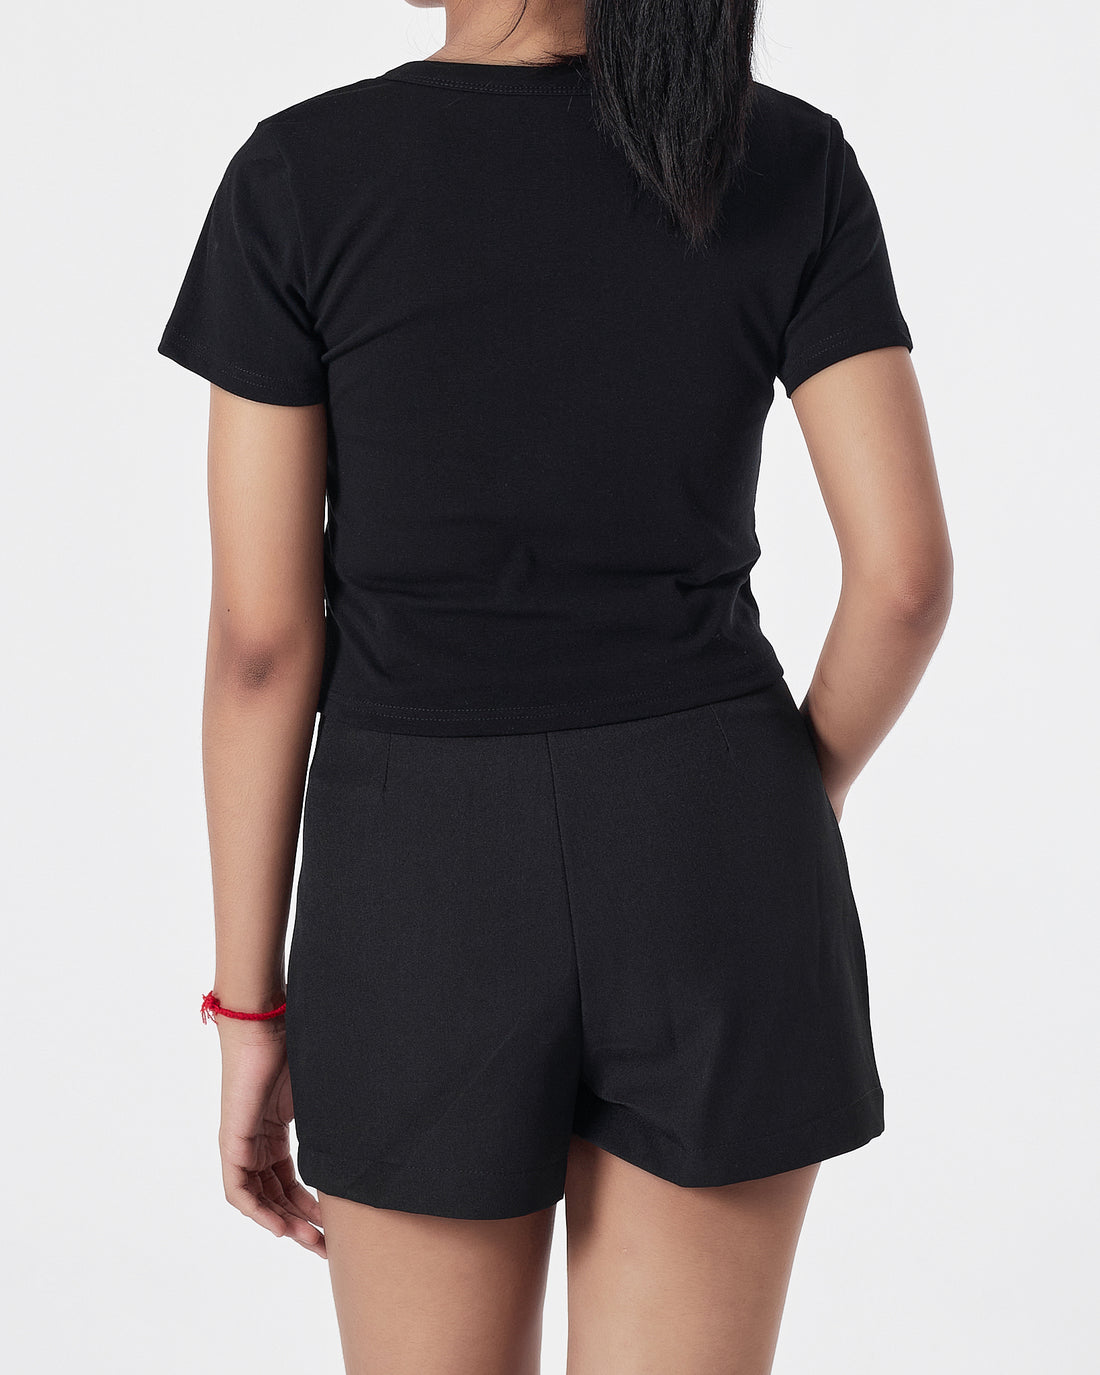 Plain Color Lady Black T-Shirt 11.90